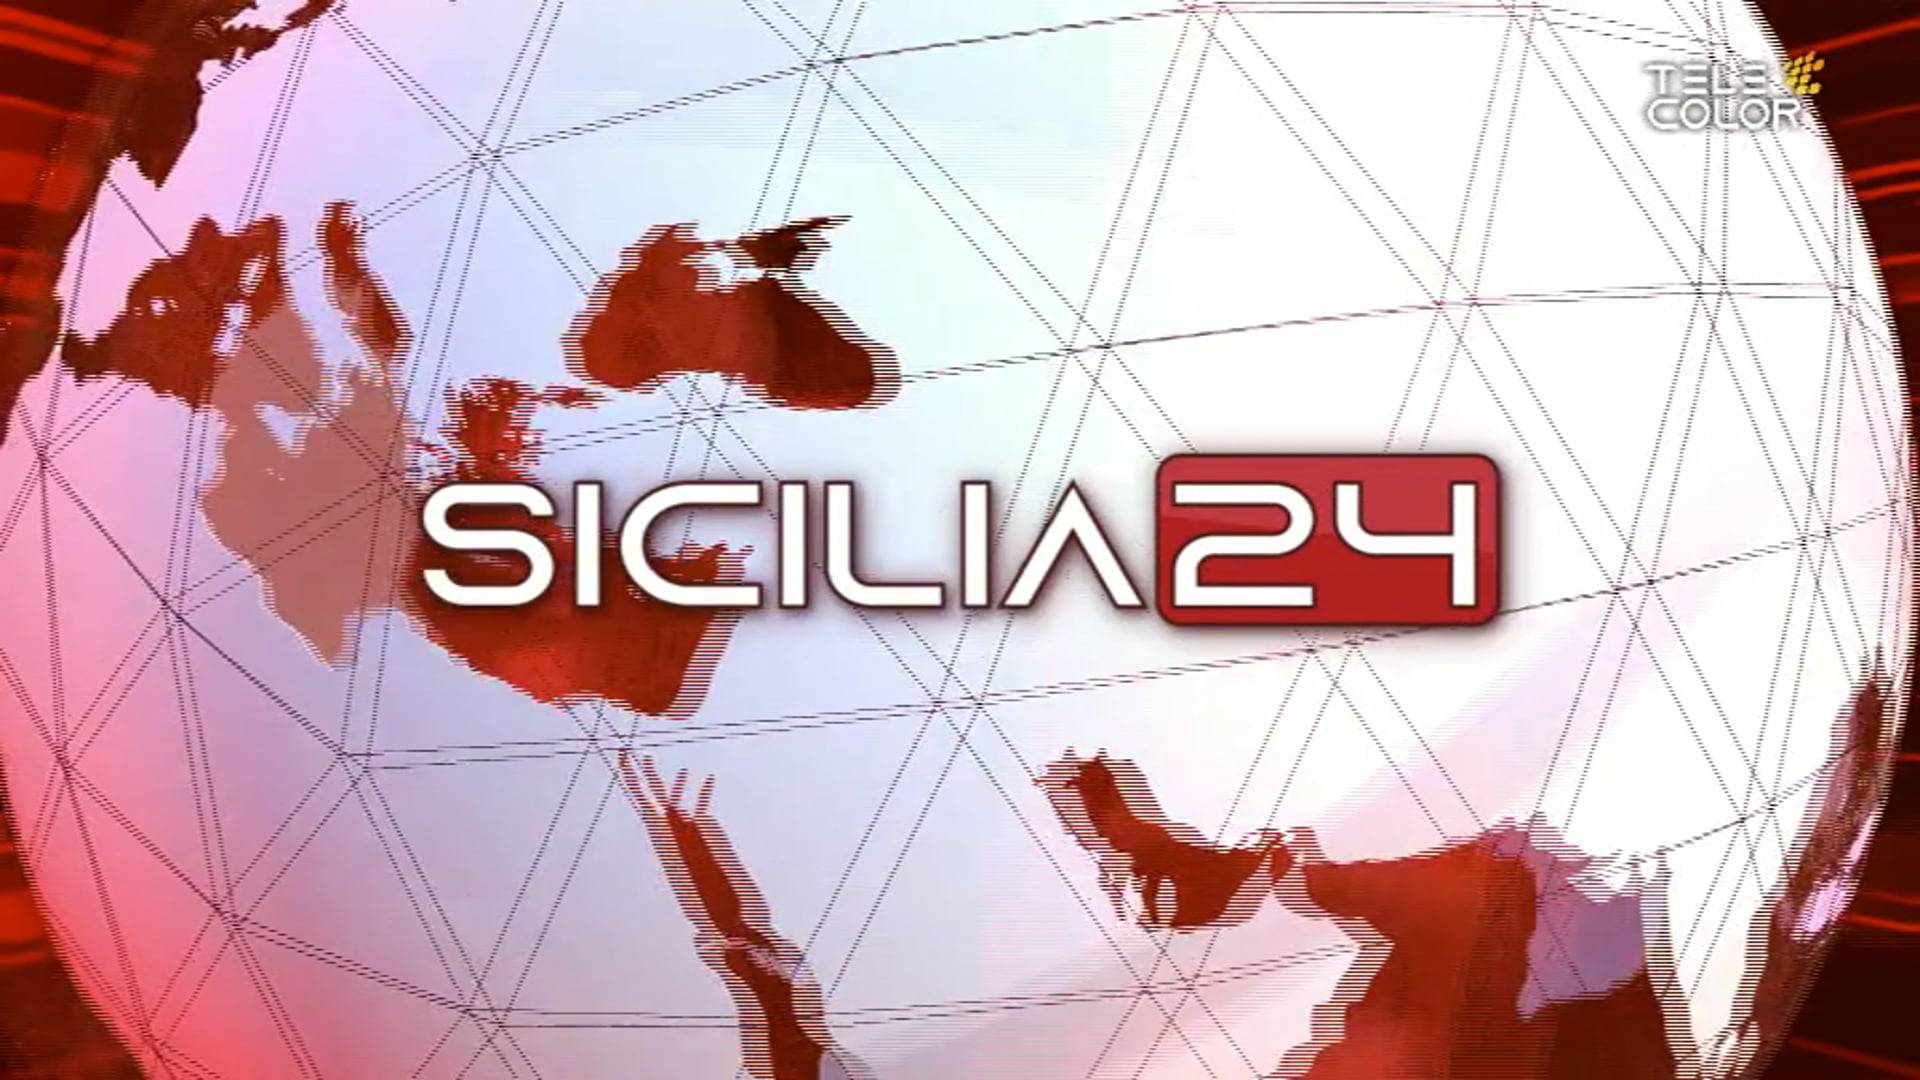 sicilia24-17-aprile-2022-ore-19-vimeo-thumbnail.jpg